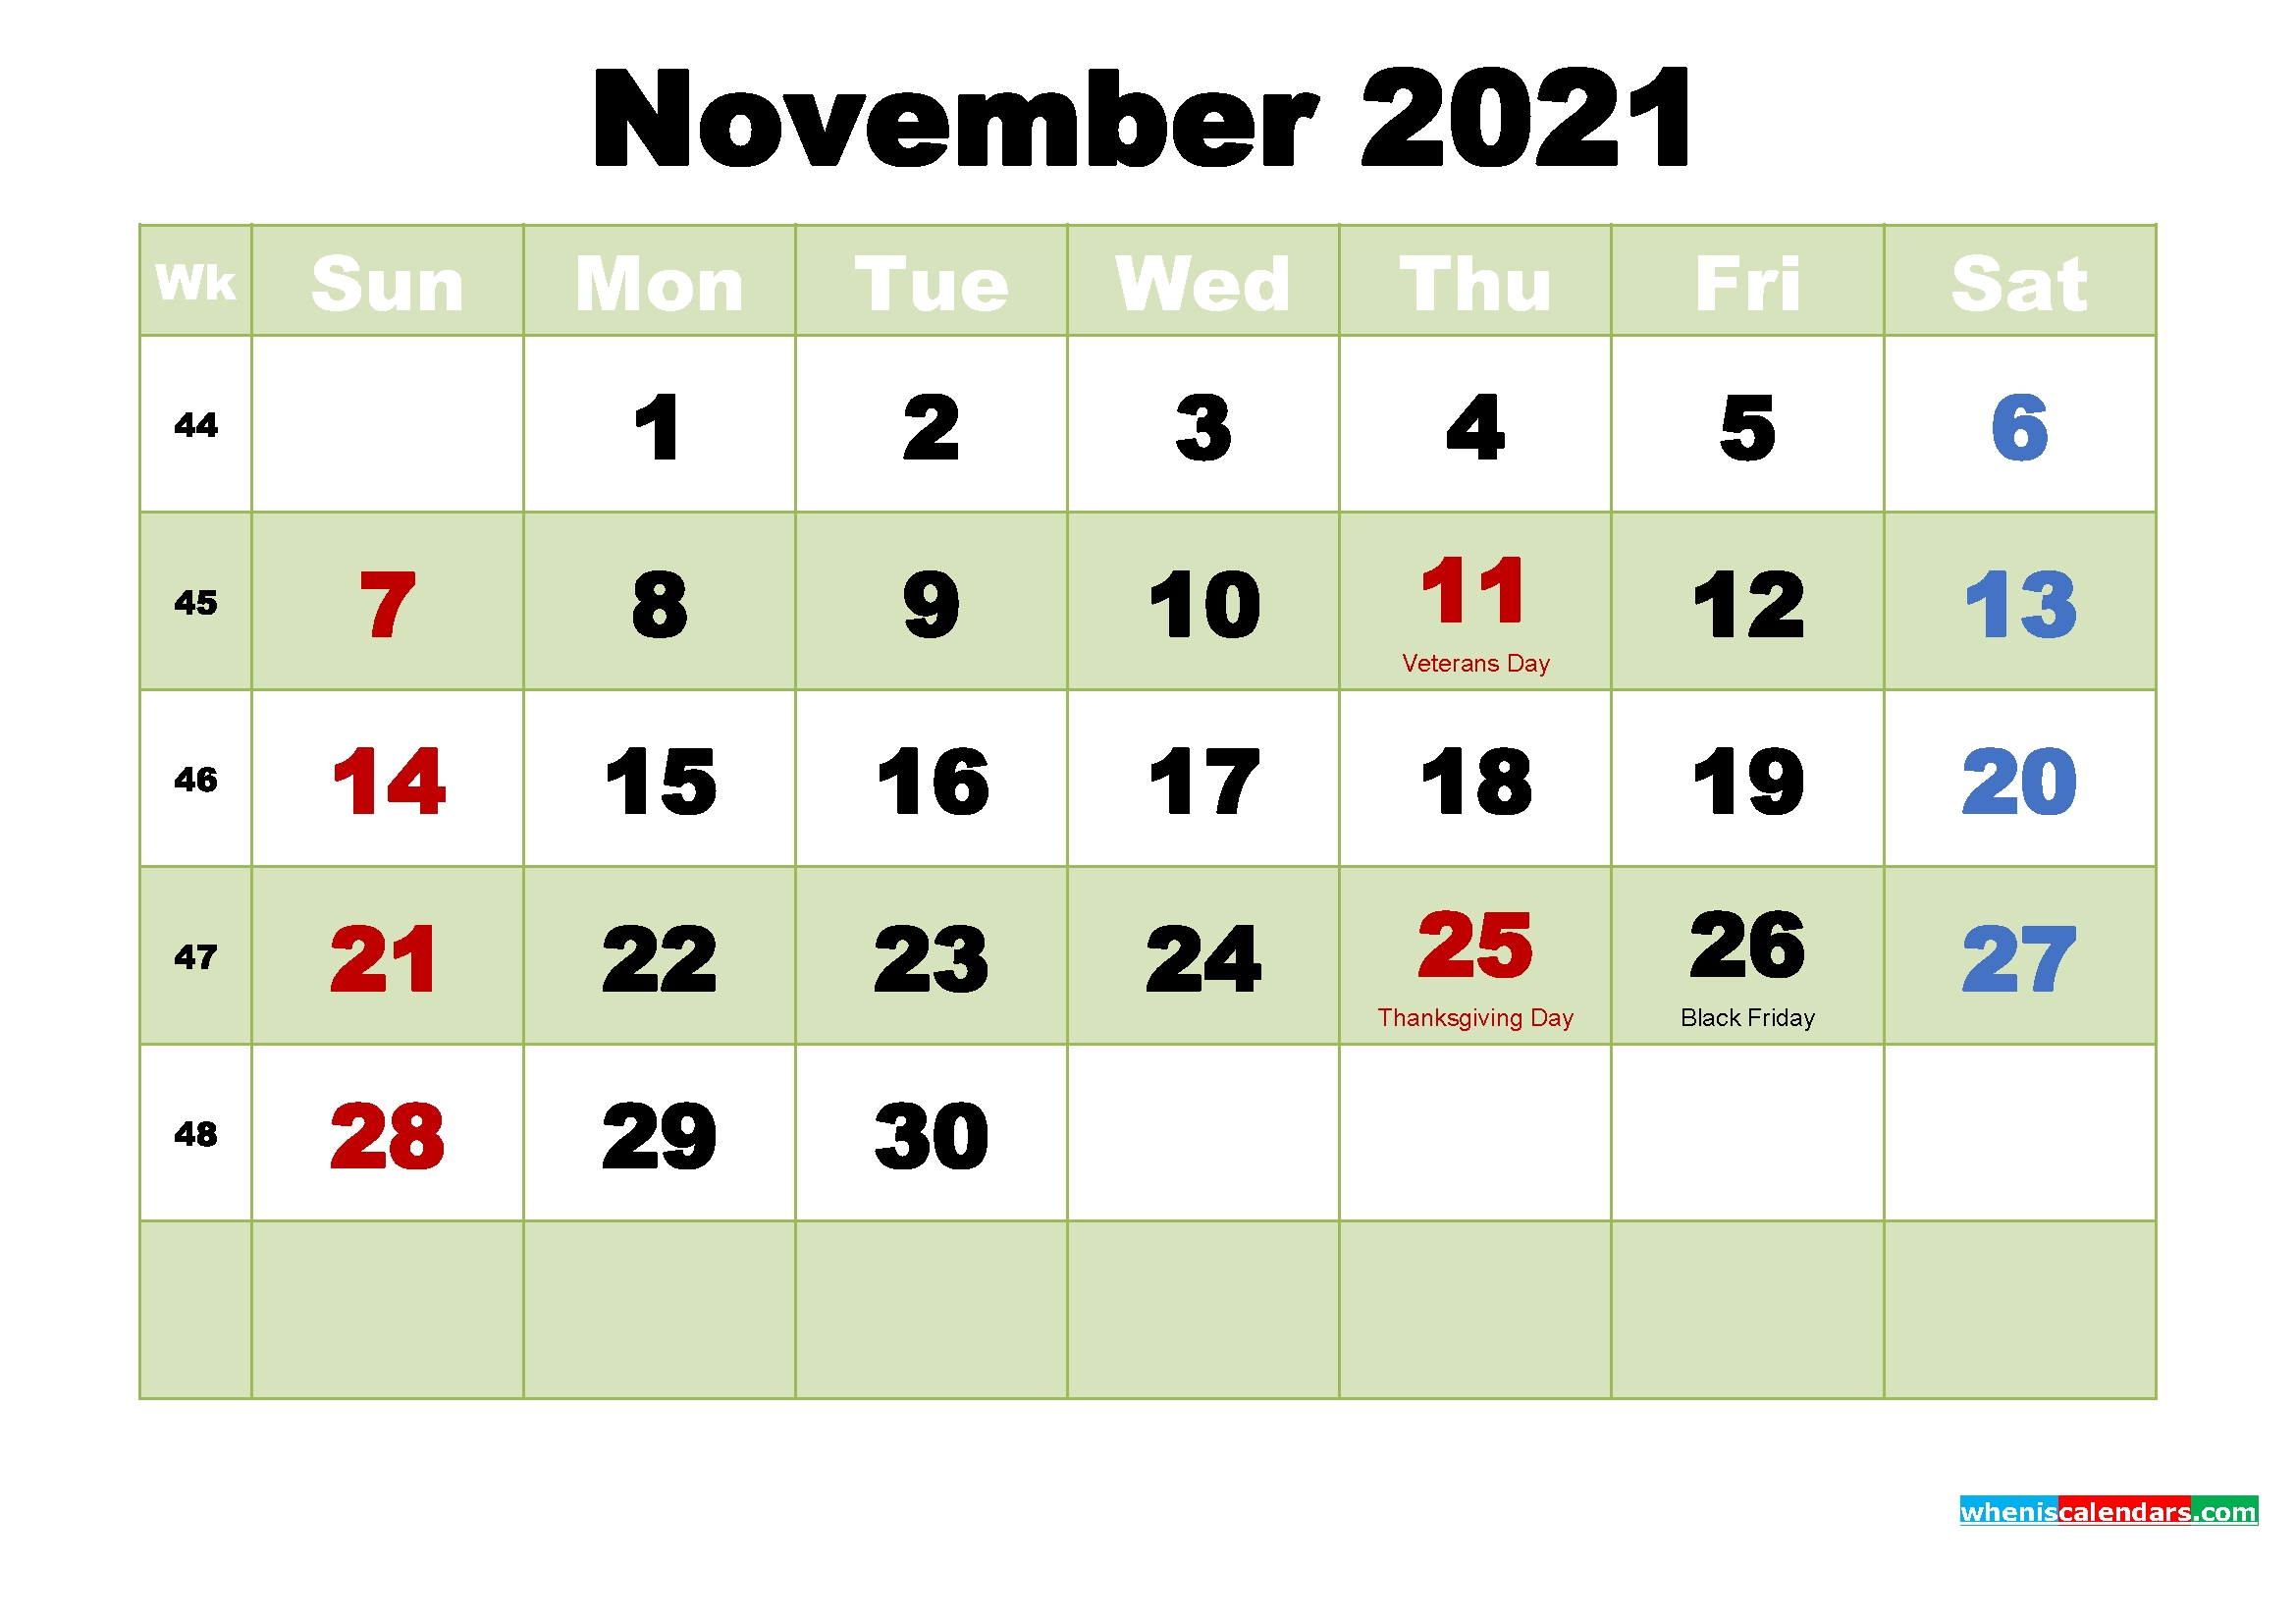 November 2021 Wallpaper Calendar | Lunar Calendar